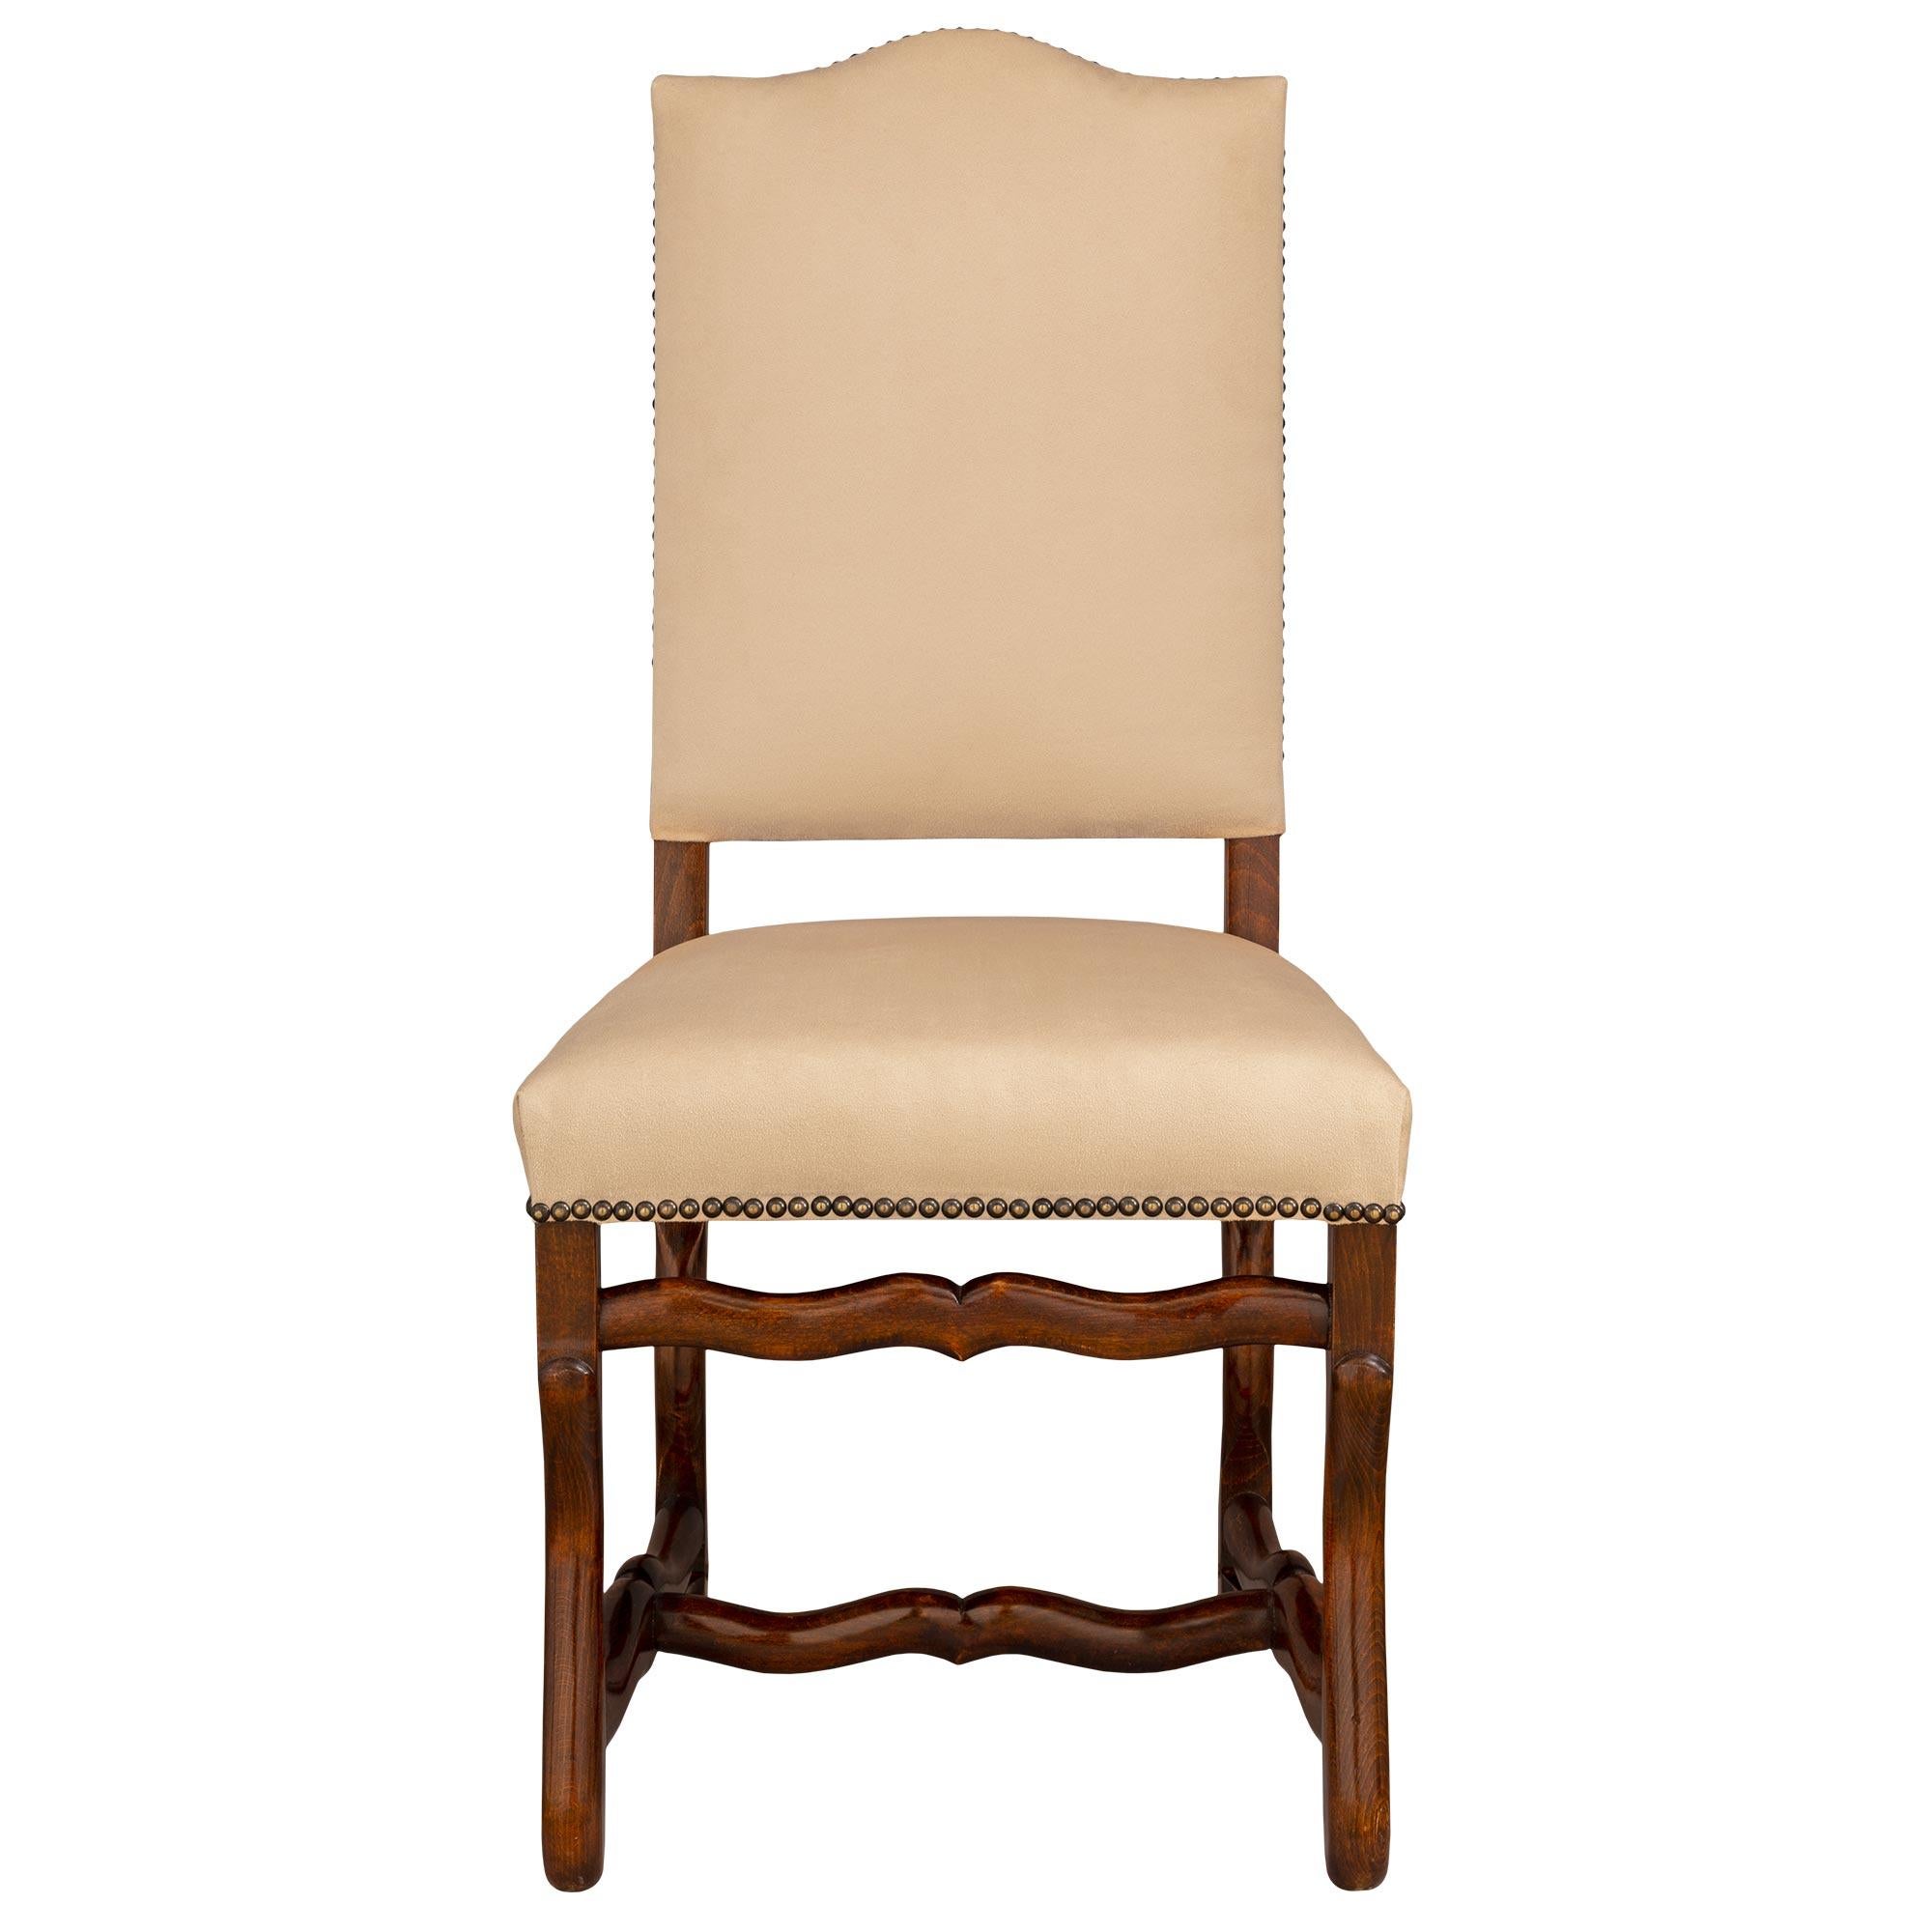 Très bel ensemble complet de dix-huit chaises de salle à manger en bois de hêtre de style Louis XIII du XIXe siècle. Chaque chaise Os de Mouton, qui fait référence au châssis sinueux, élément quintessentiel du mobilier Louis XIII, est surélevée par